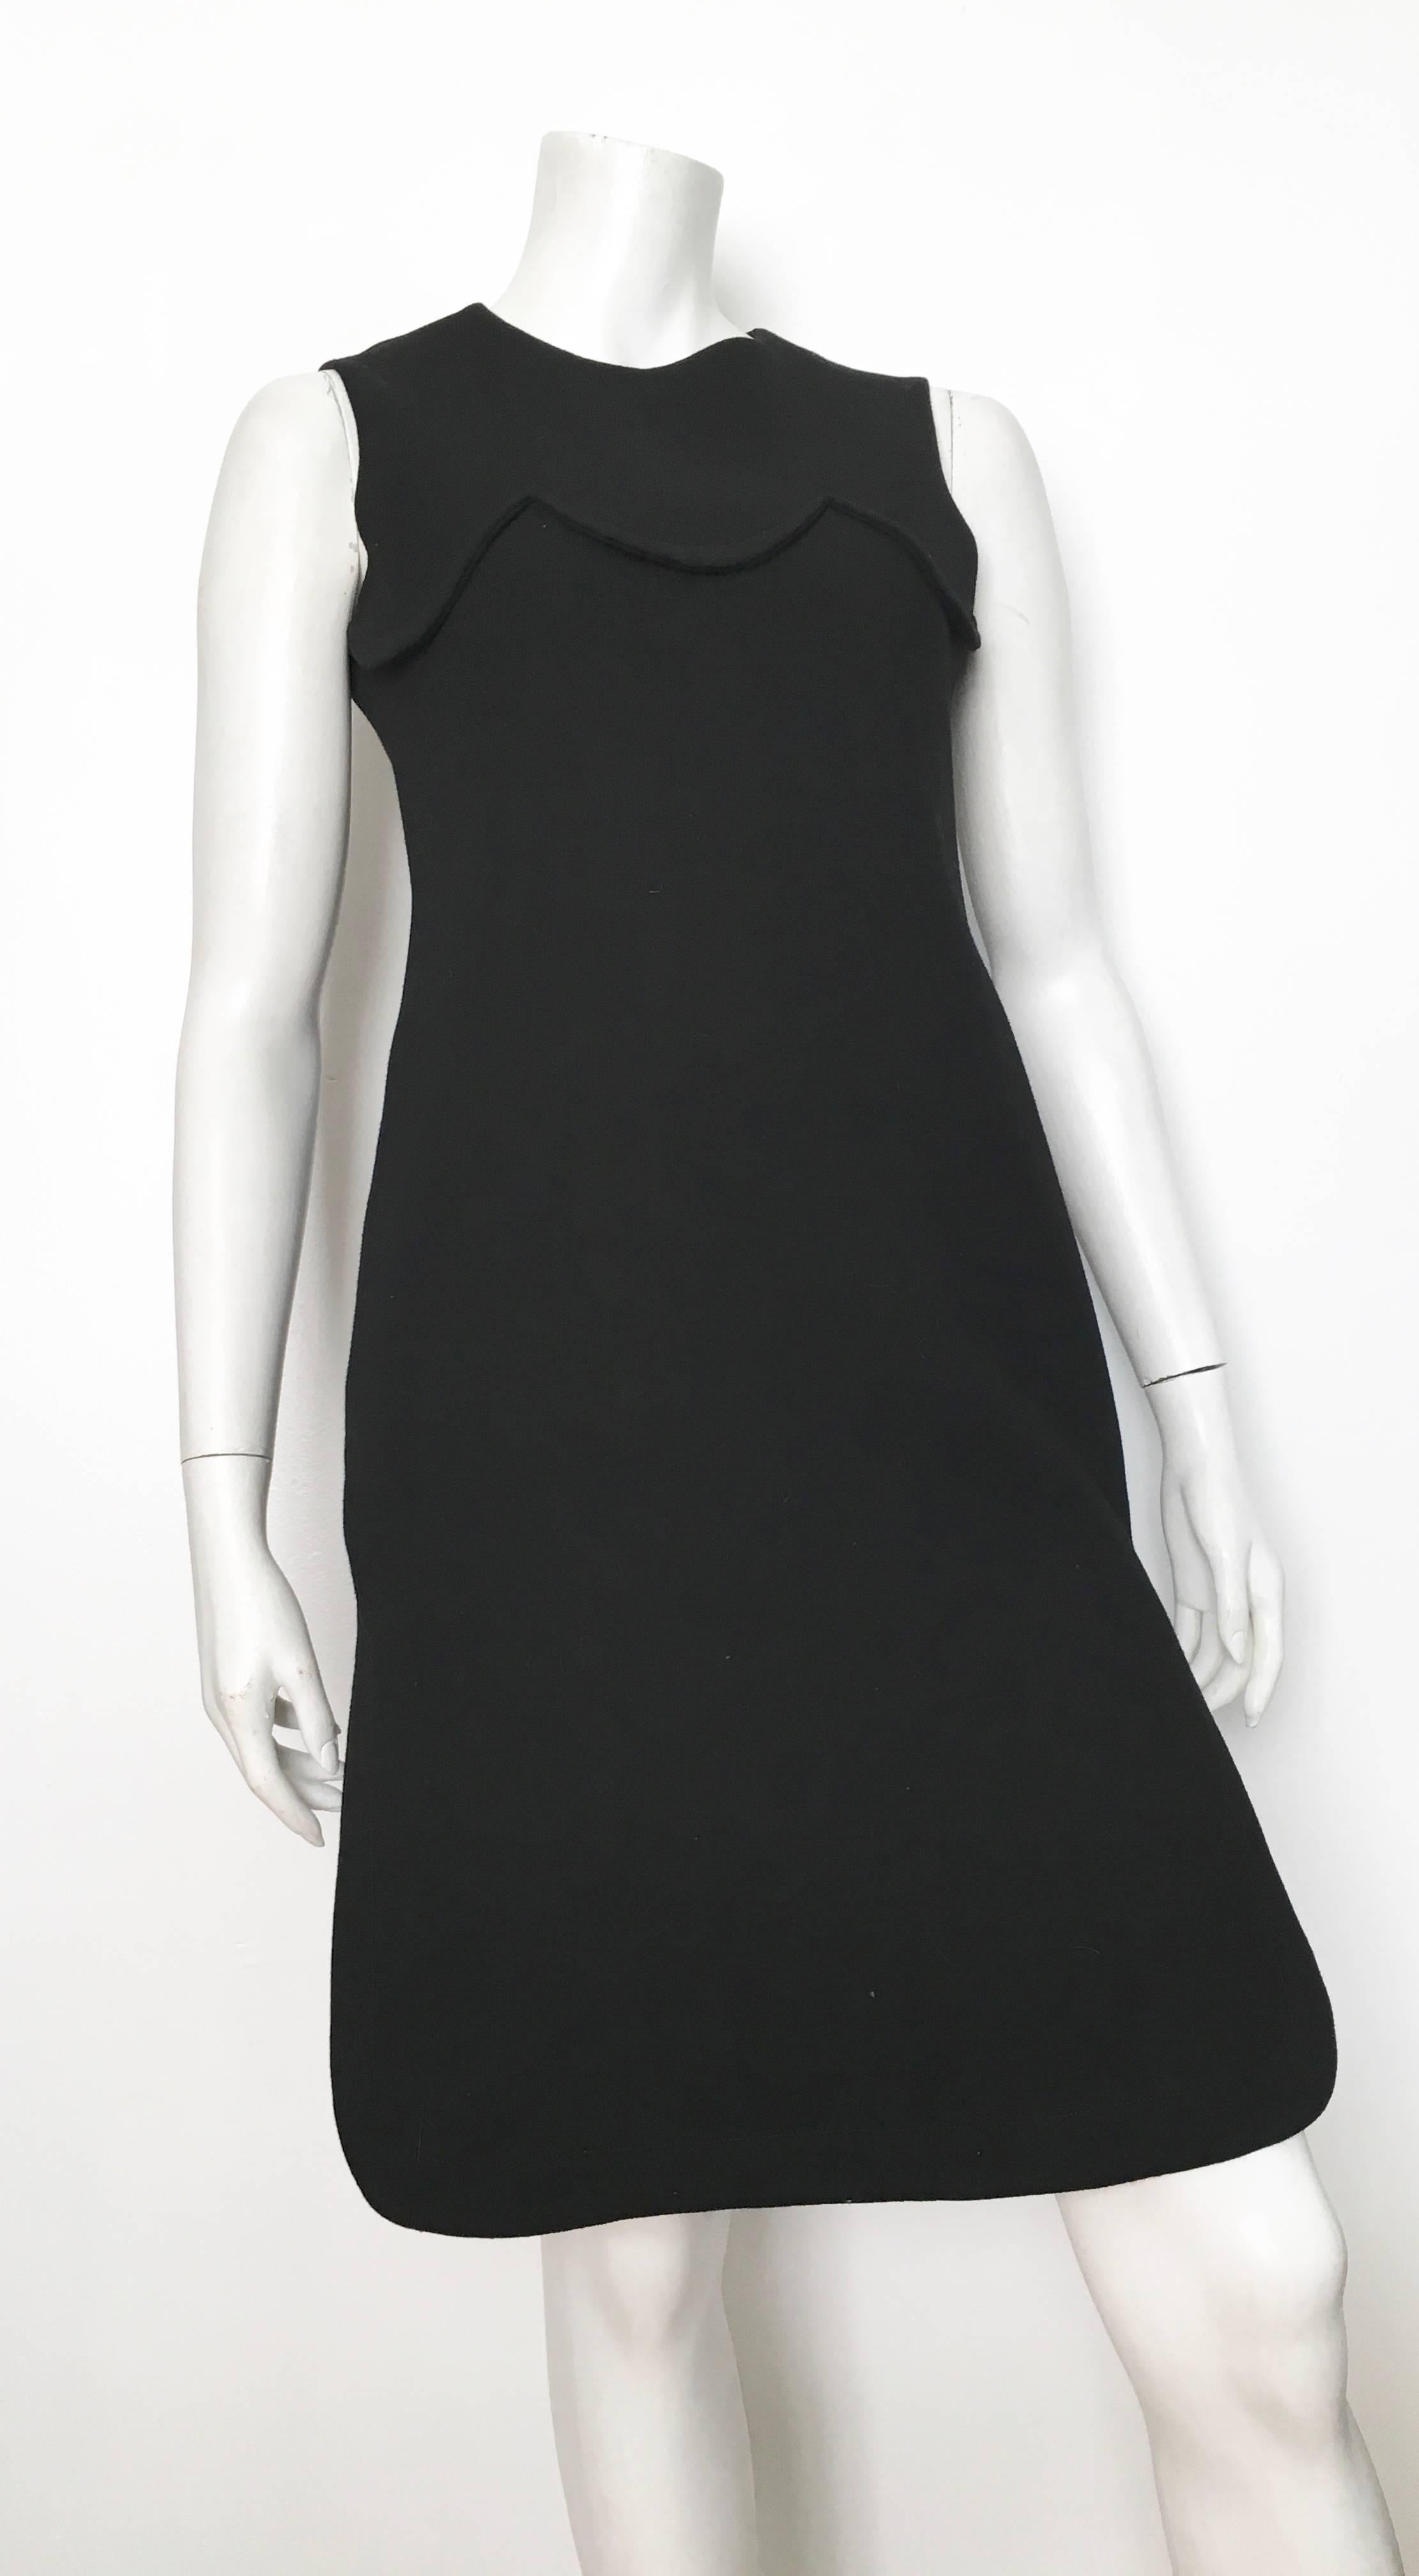 Pierre Cardin for Saks Fifth Avenue 1971 Black Wool Sleeveless Dress Size 6. 8